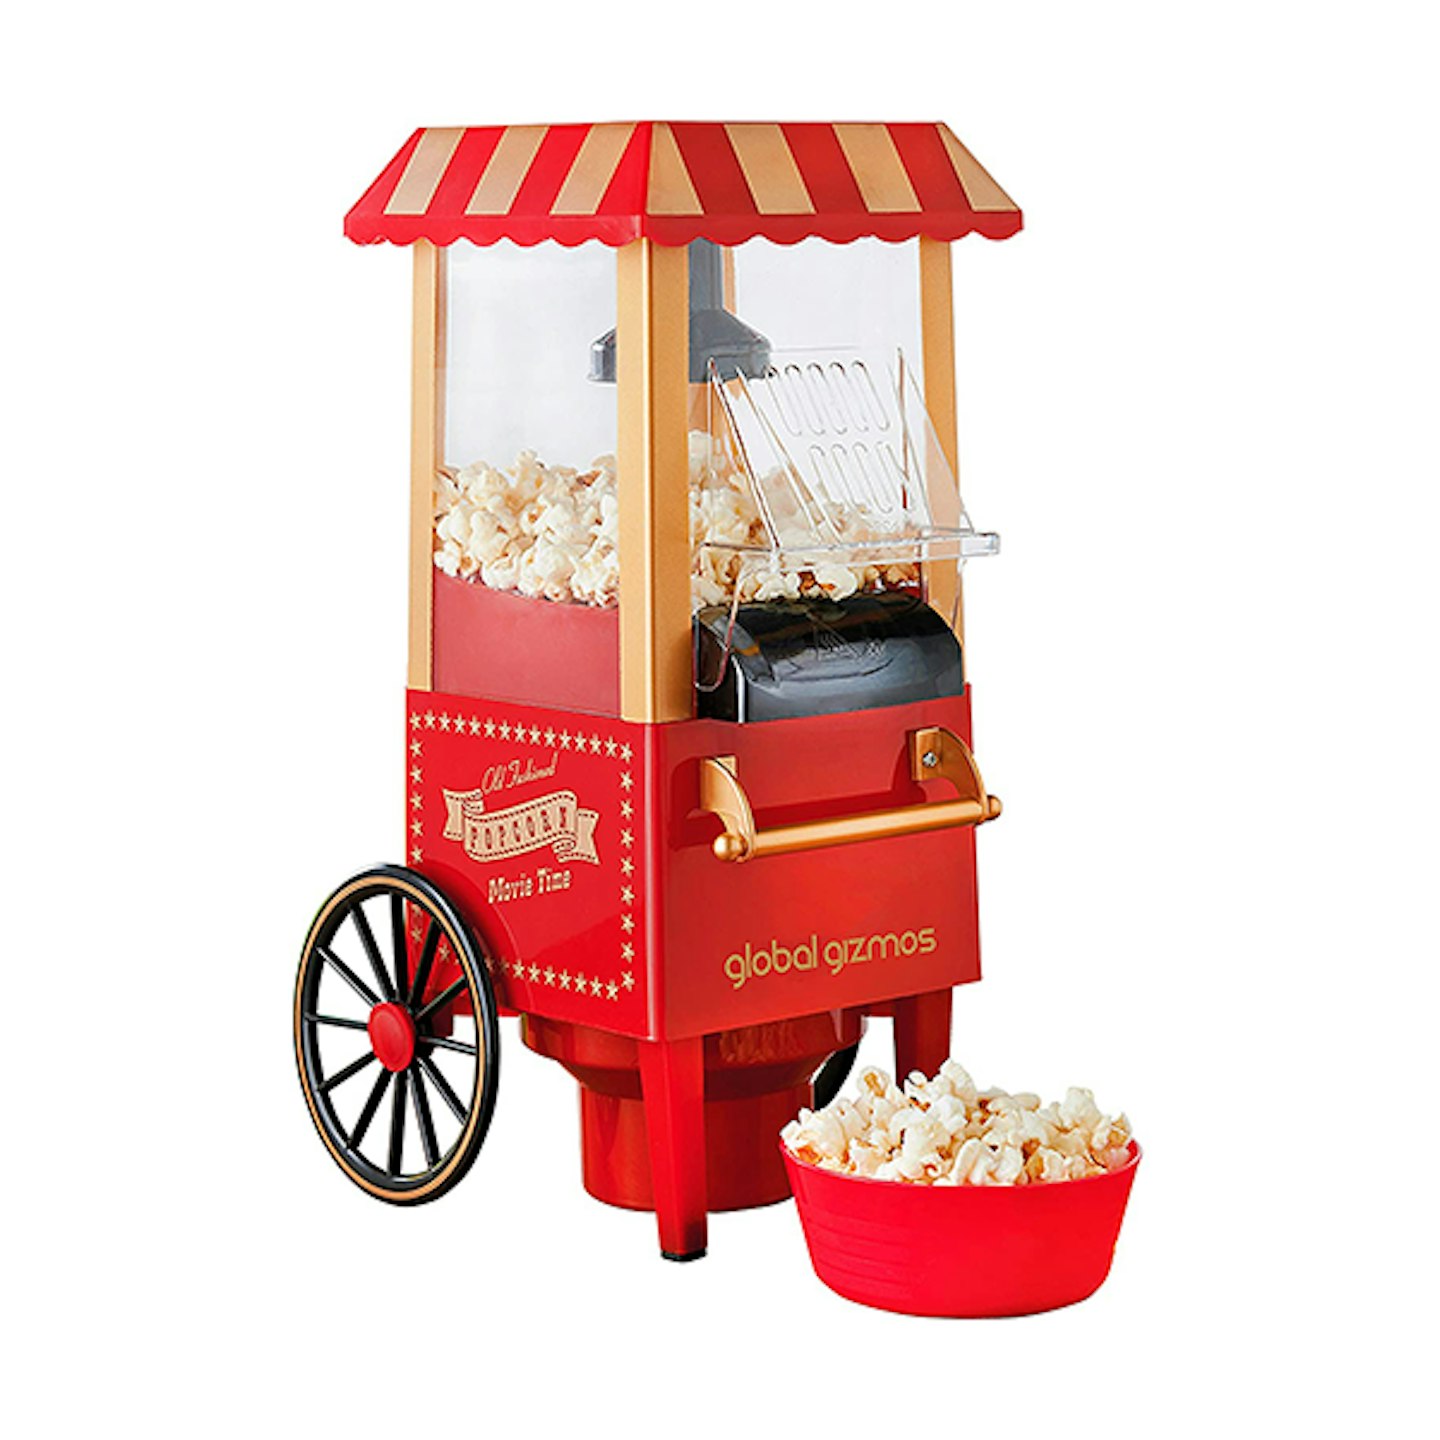 Global Gizmos 50300 Carnival Popcorn Maker